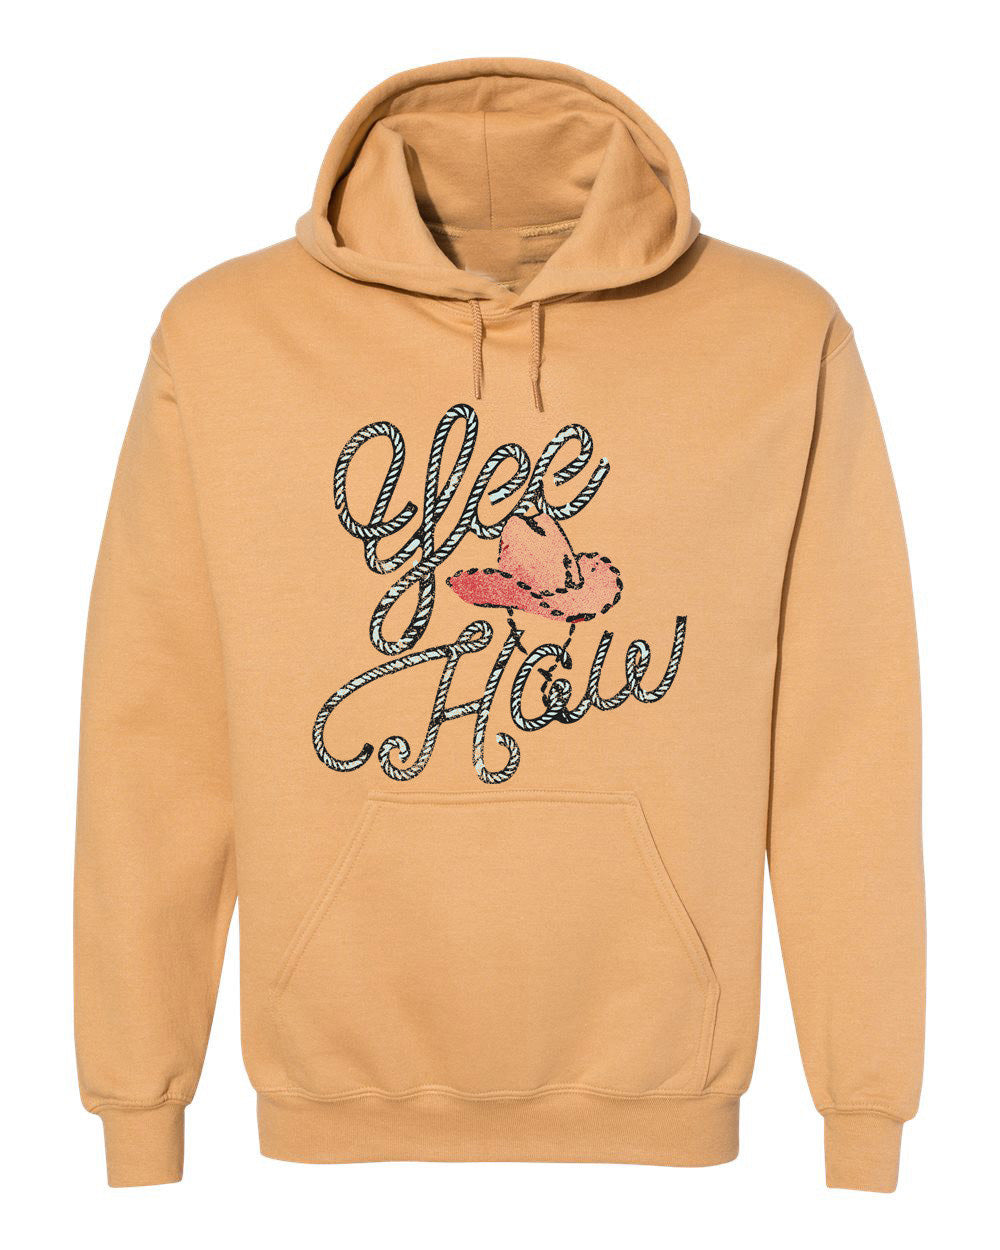 Yee Haw Old Gold Thrifted Hooded Sweatshirt - shoplivylu